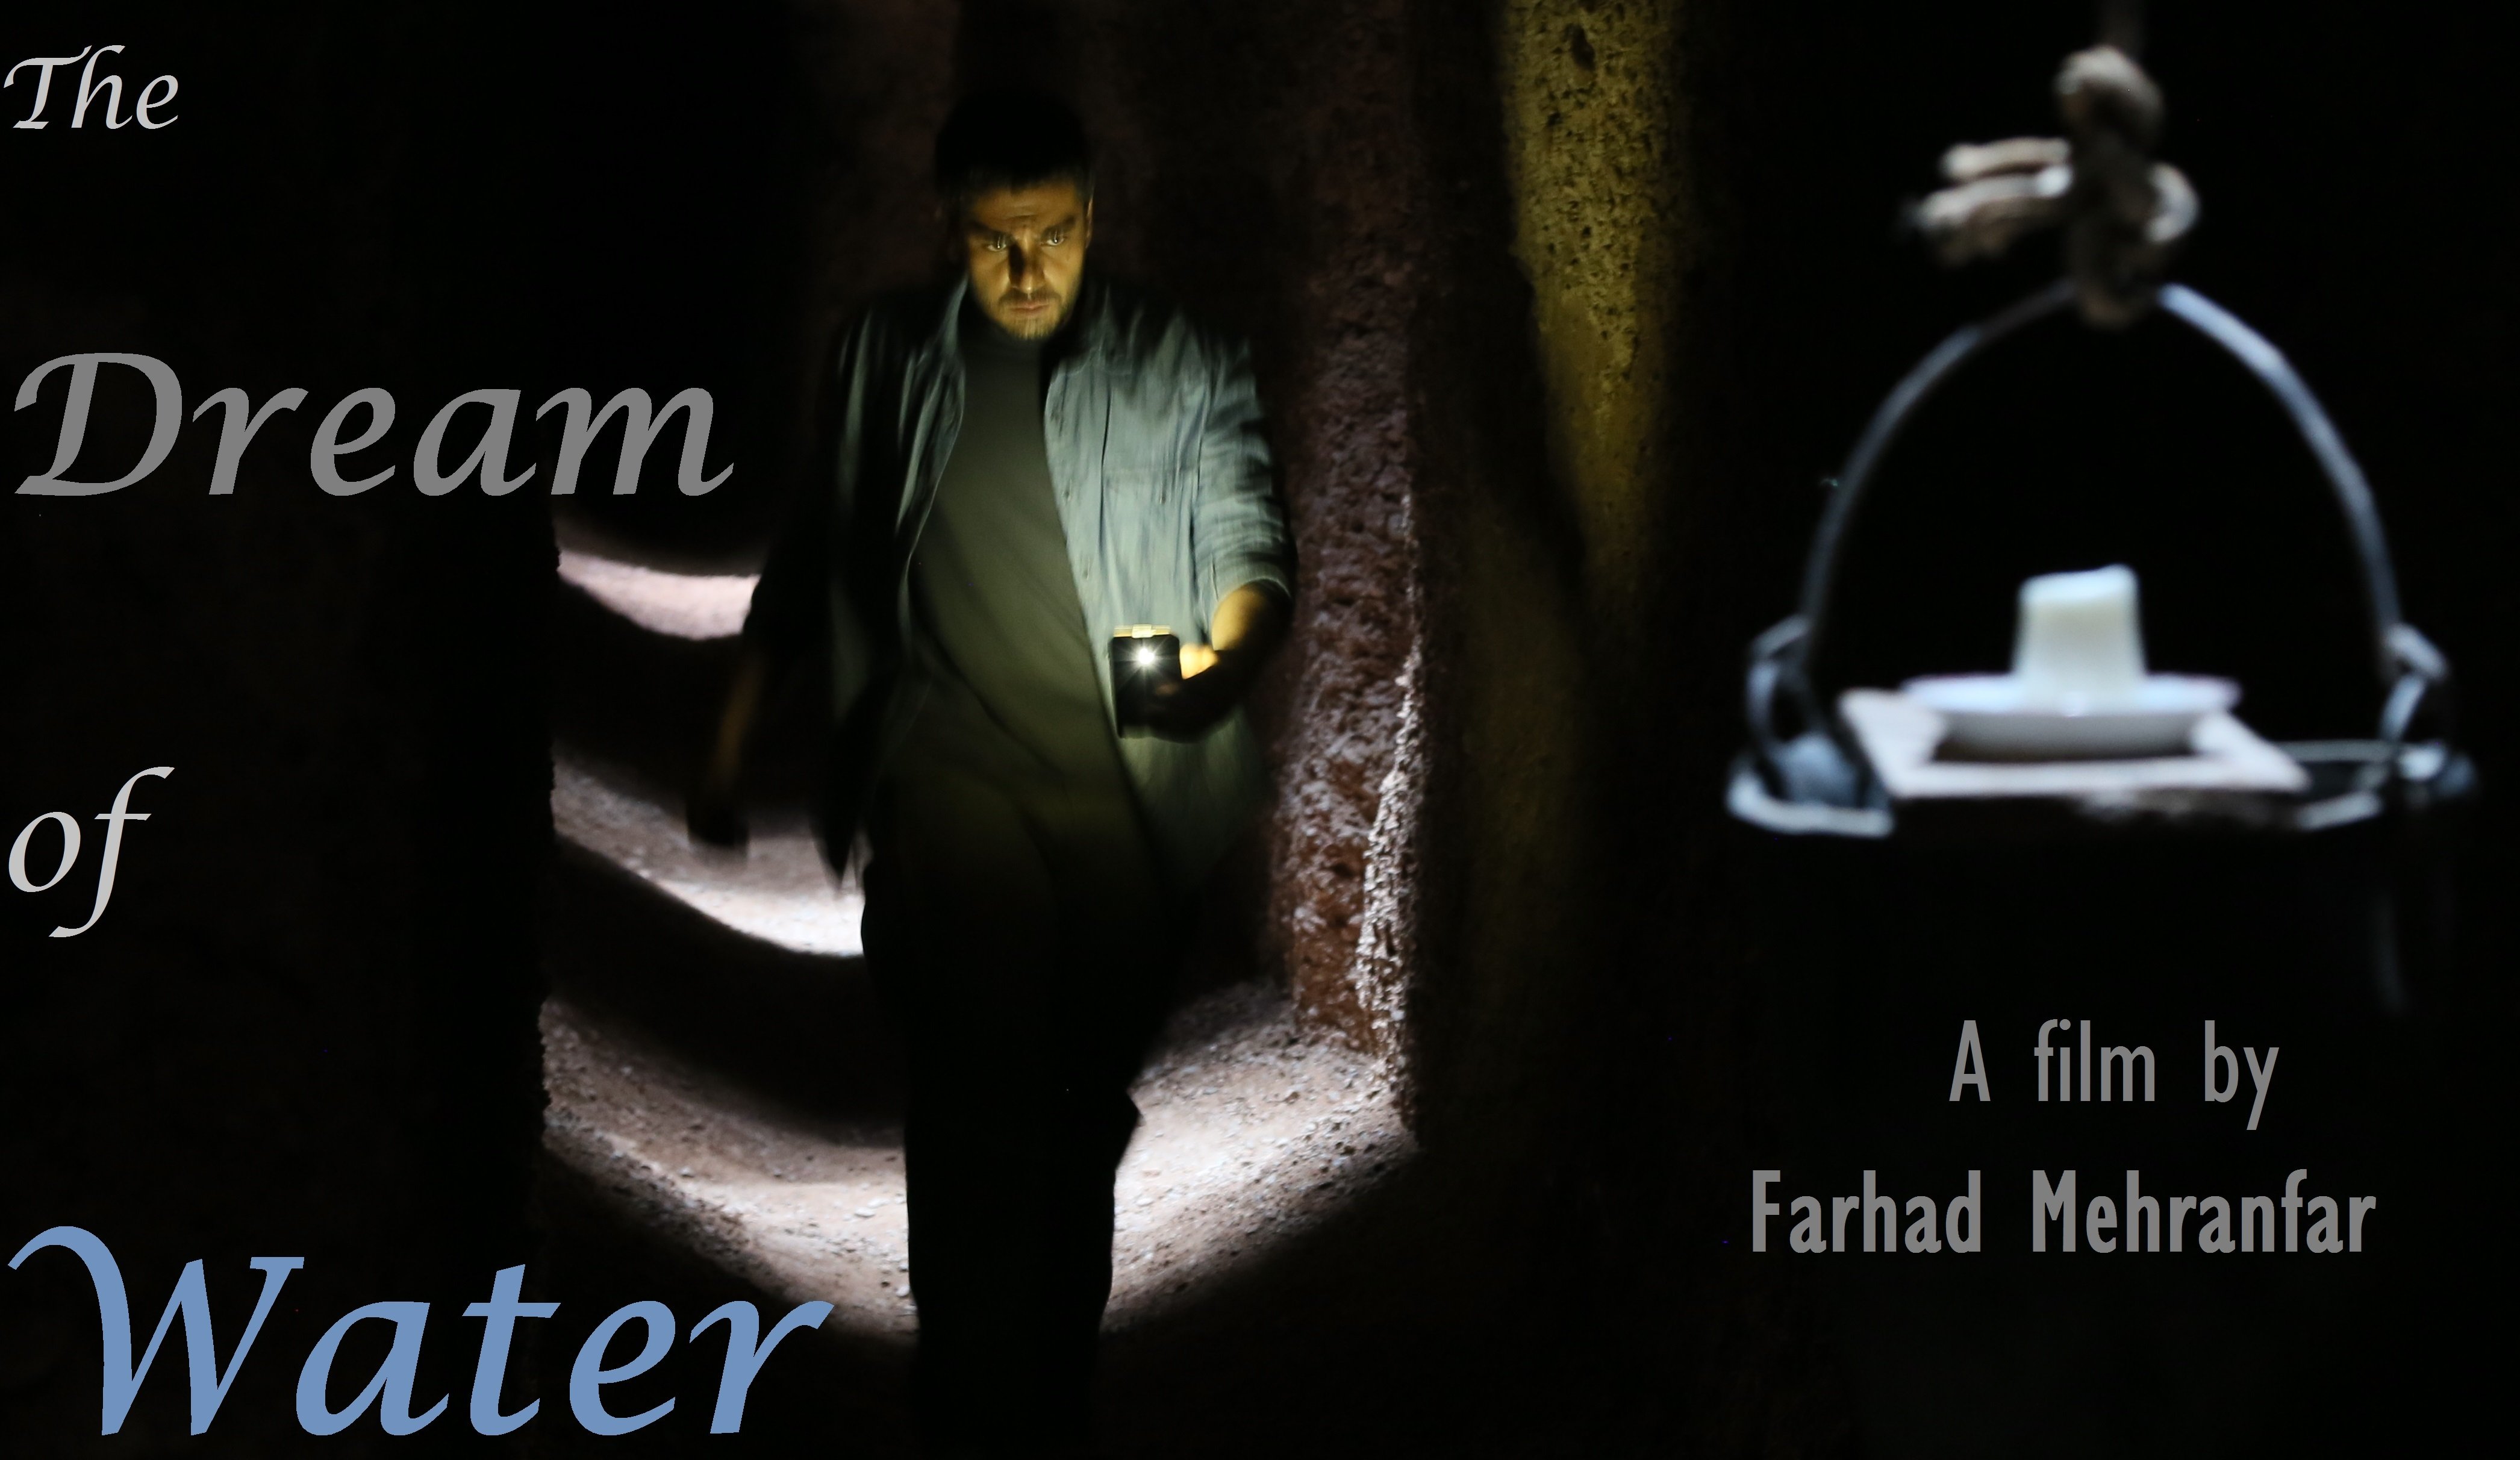 Payam Fazli in The Dream of Water by Farhad Mehranfar